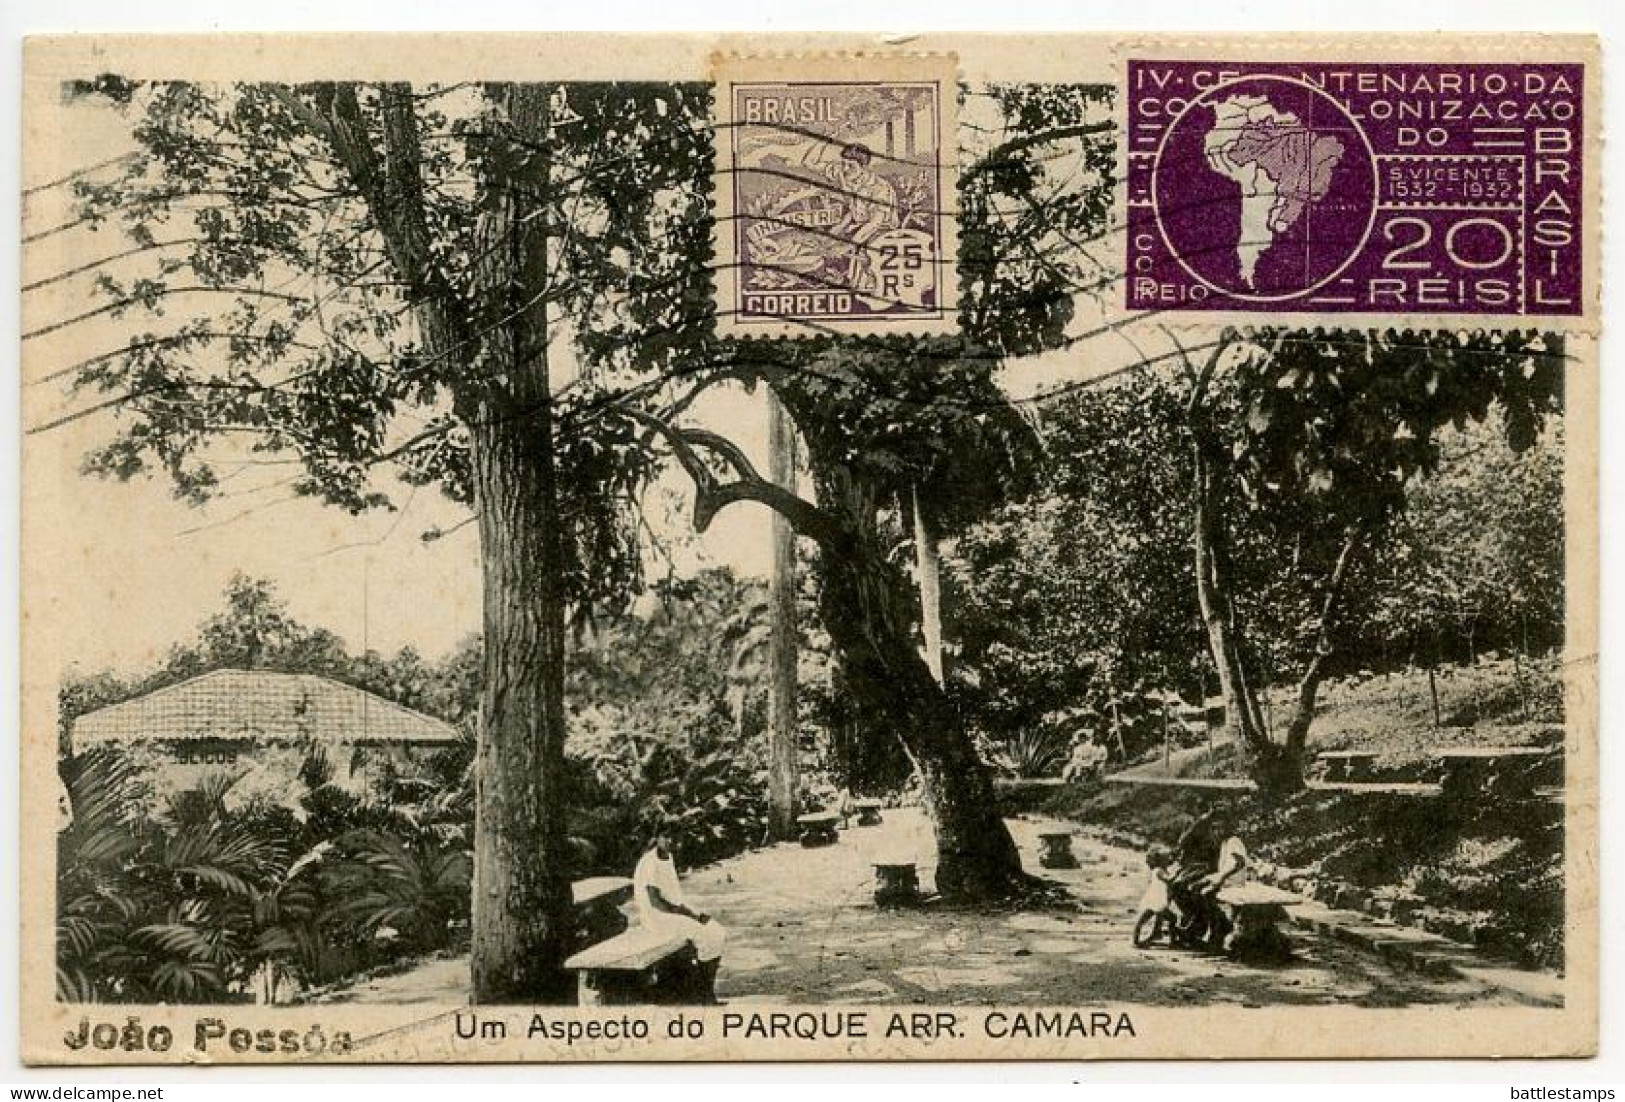 Brazil 1933 Postcard João Pessoa - Um Aspecto Do Parque Arr. Camara; 25r. Industry & 20r. Map Stamps - João Pessoa